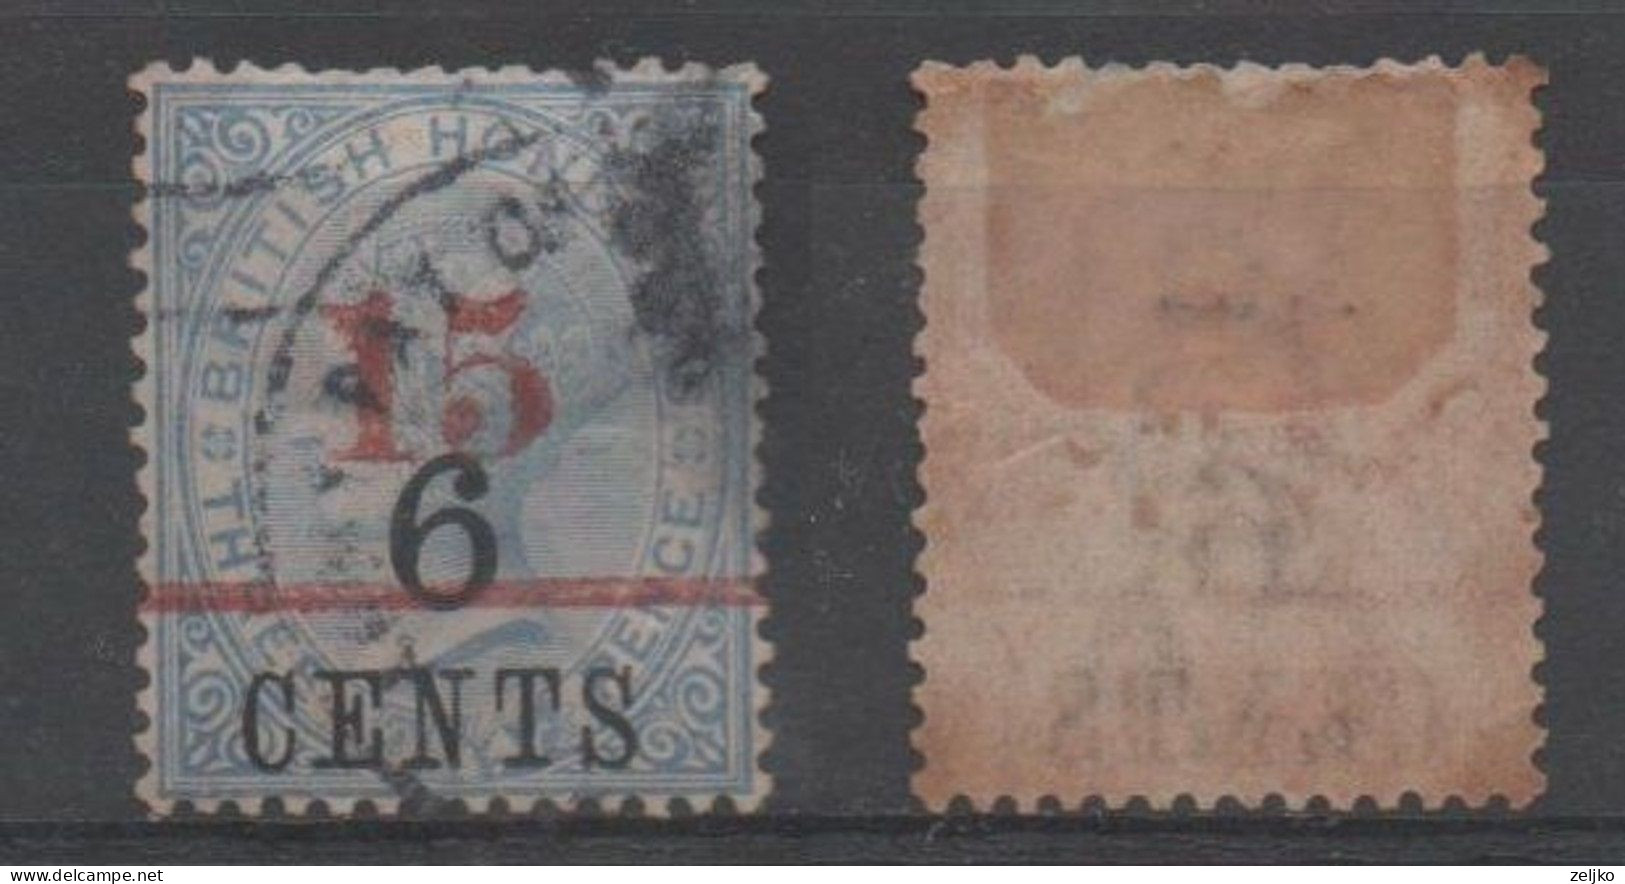 British Honduras, Used, 1891, Michel 30 ( C.v. 40 € ) - Britisch-Honduras (...-1970)